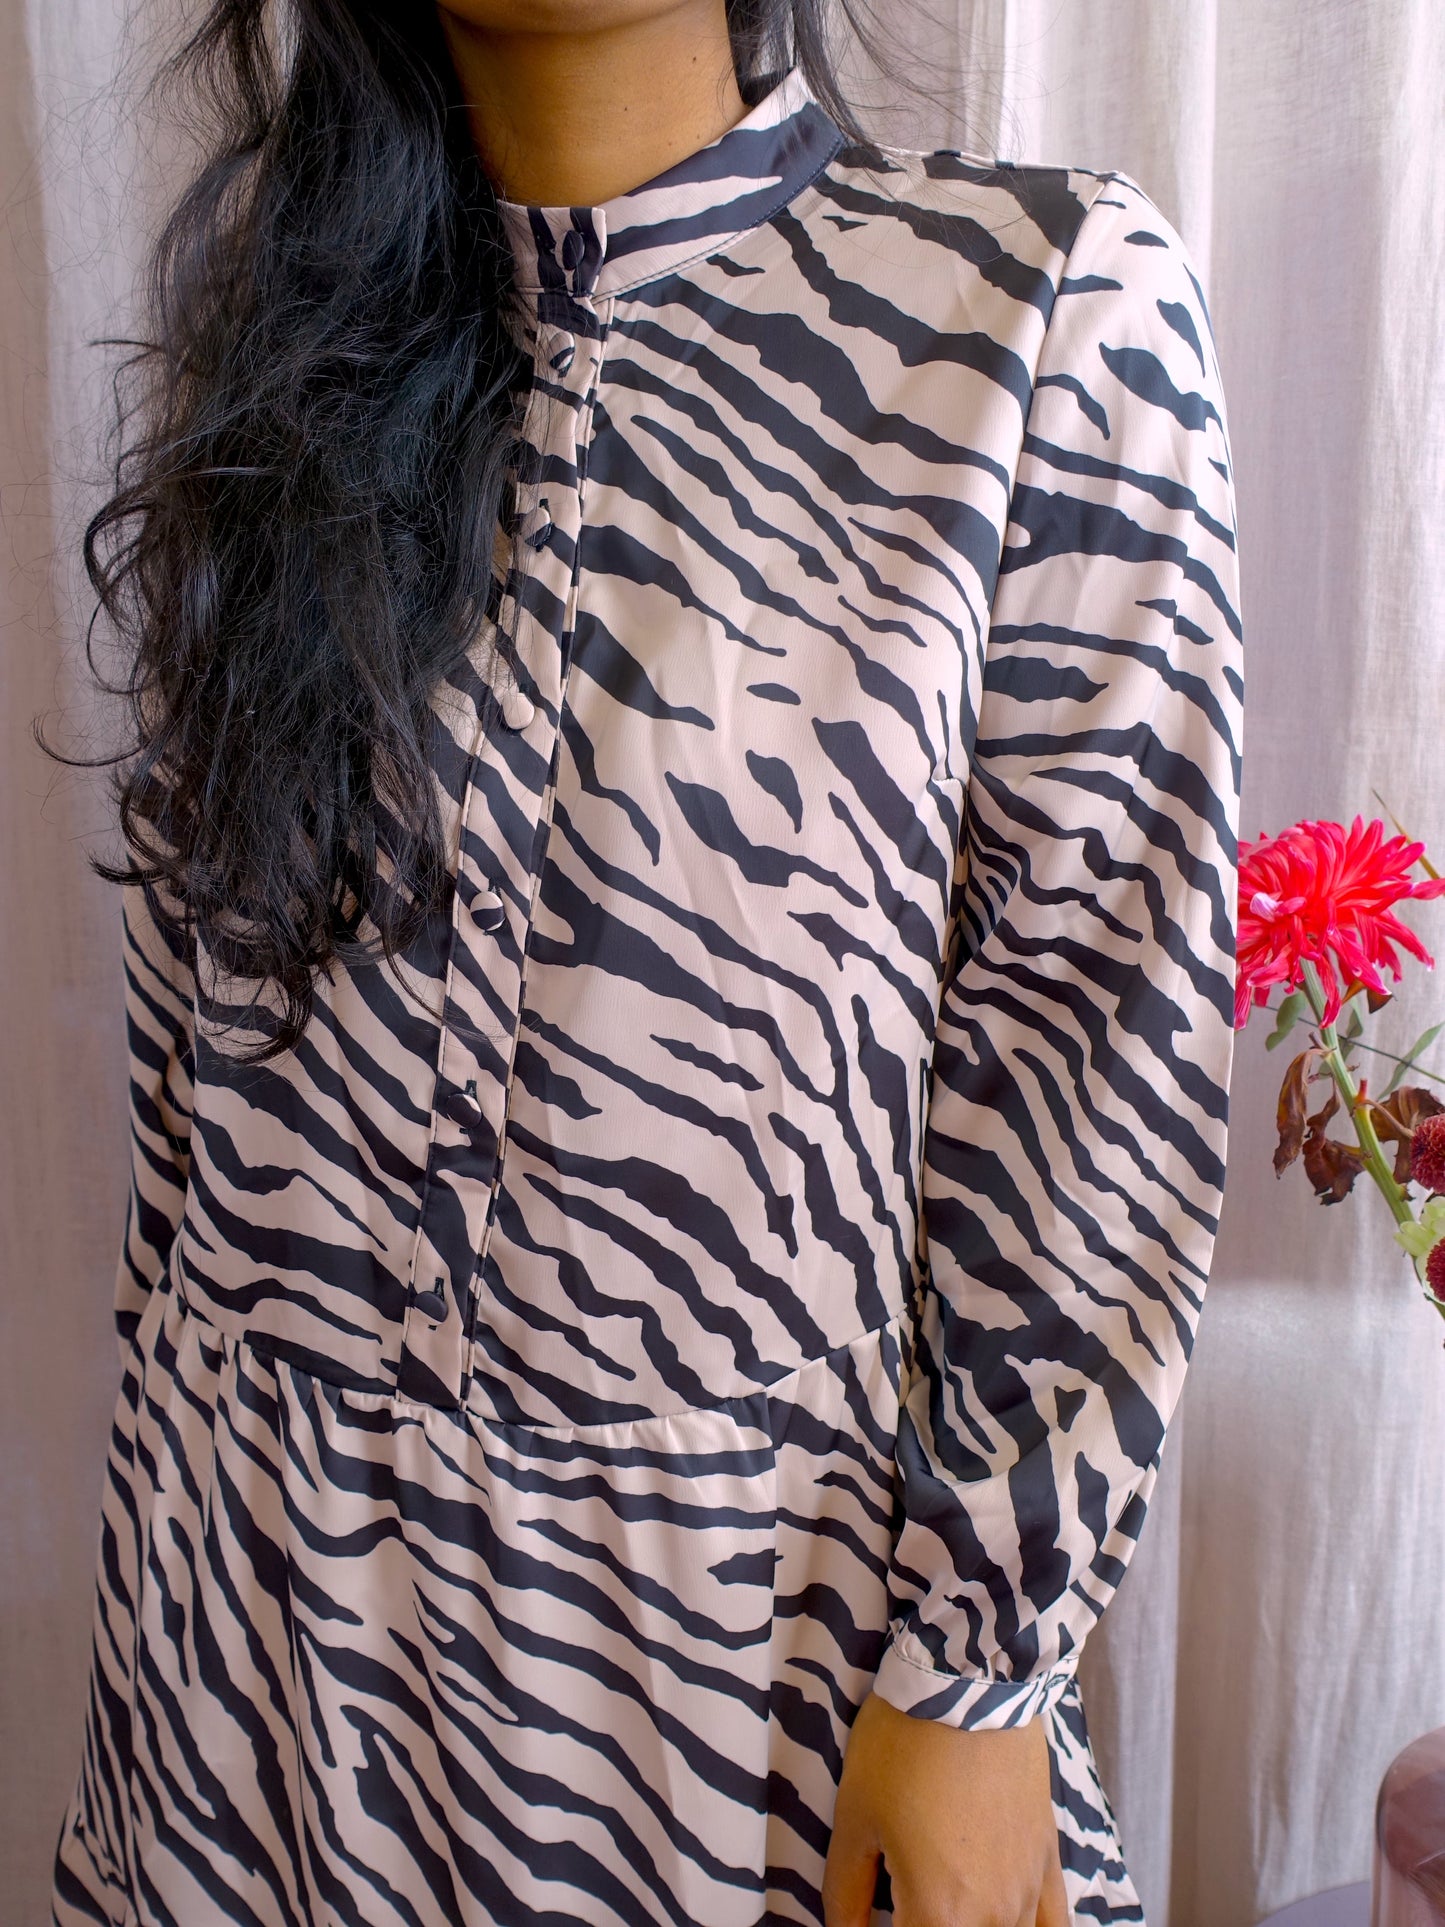 OU. boutique zebra dress